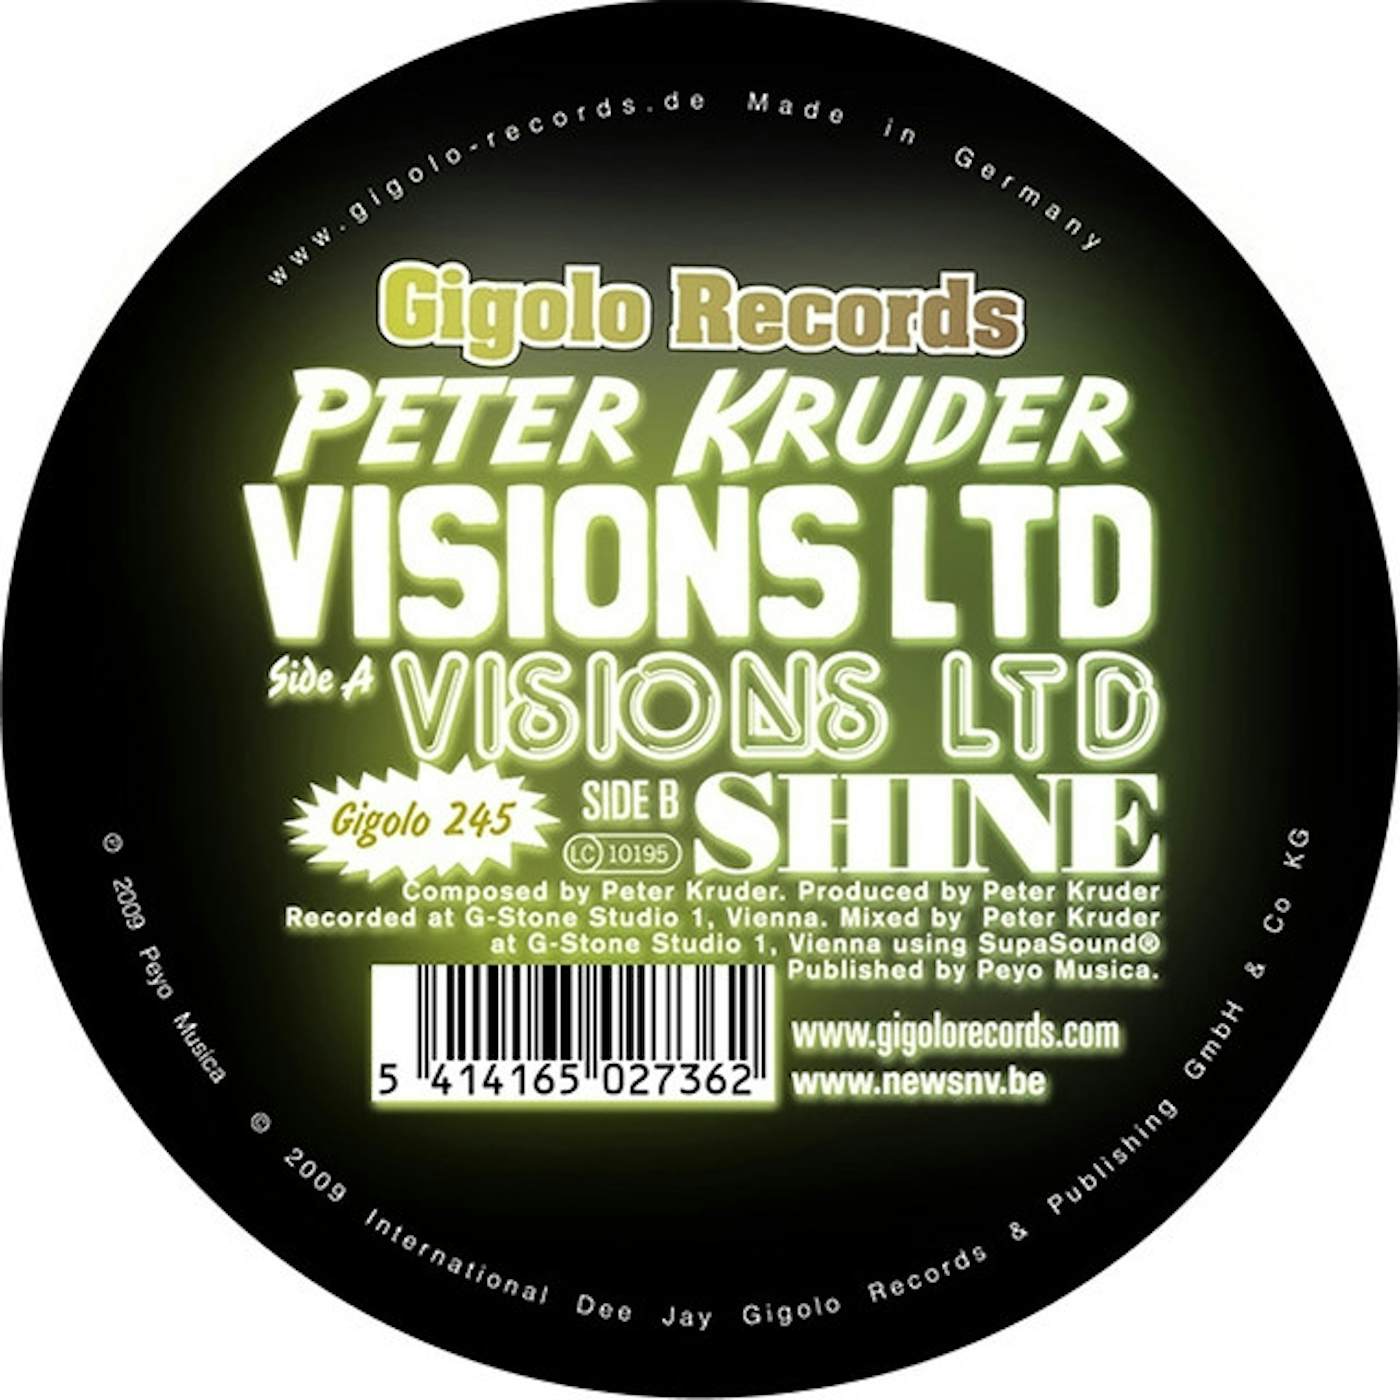 Peter Kruder Visions Ltd Vinyl Record